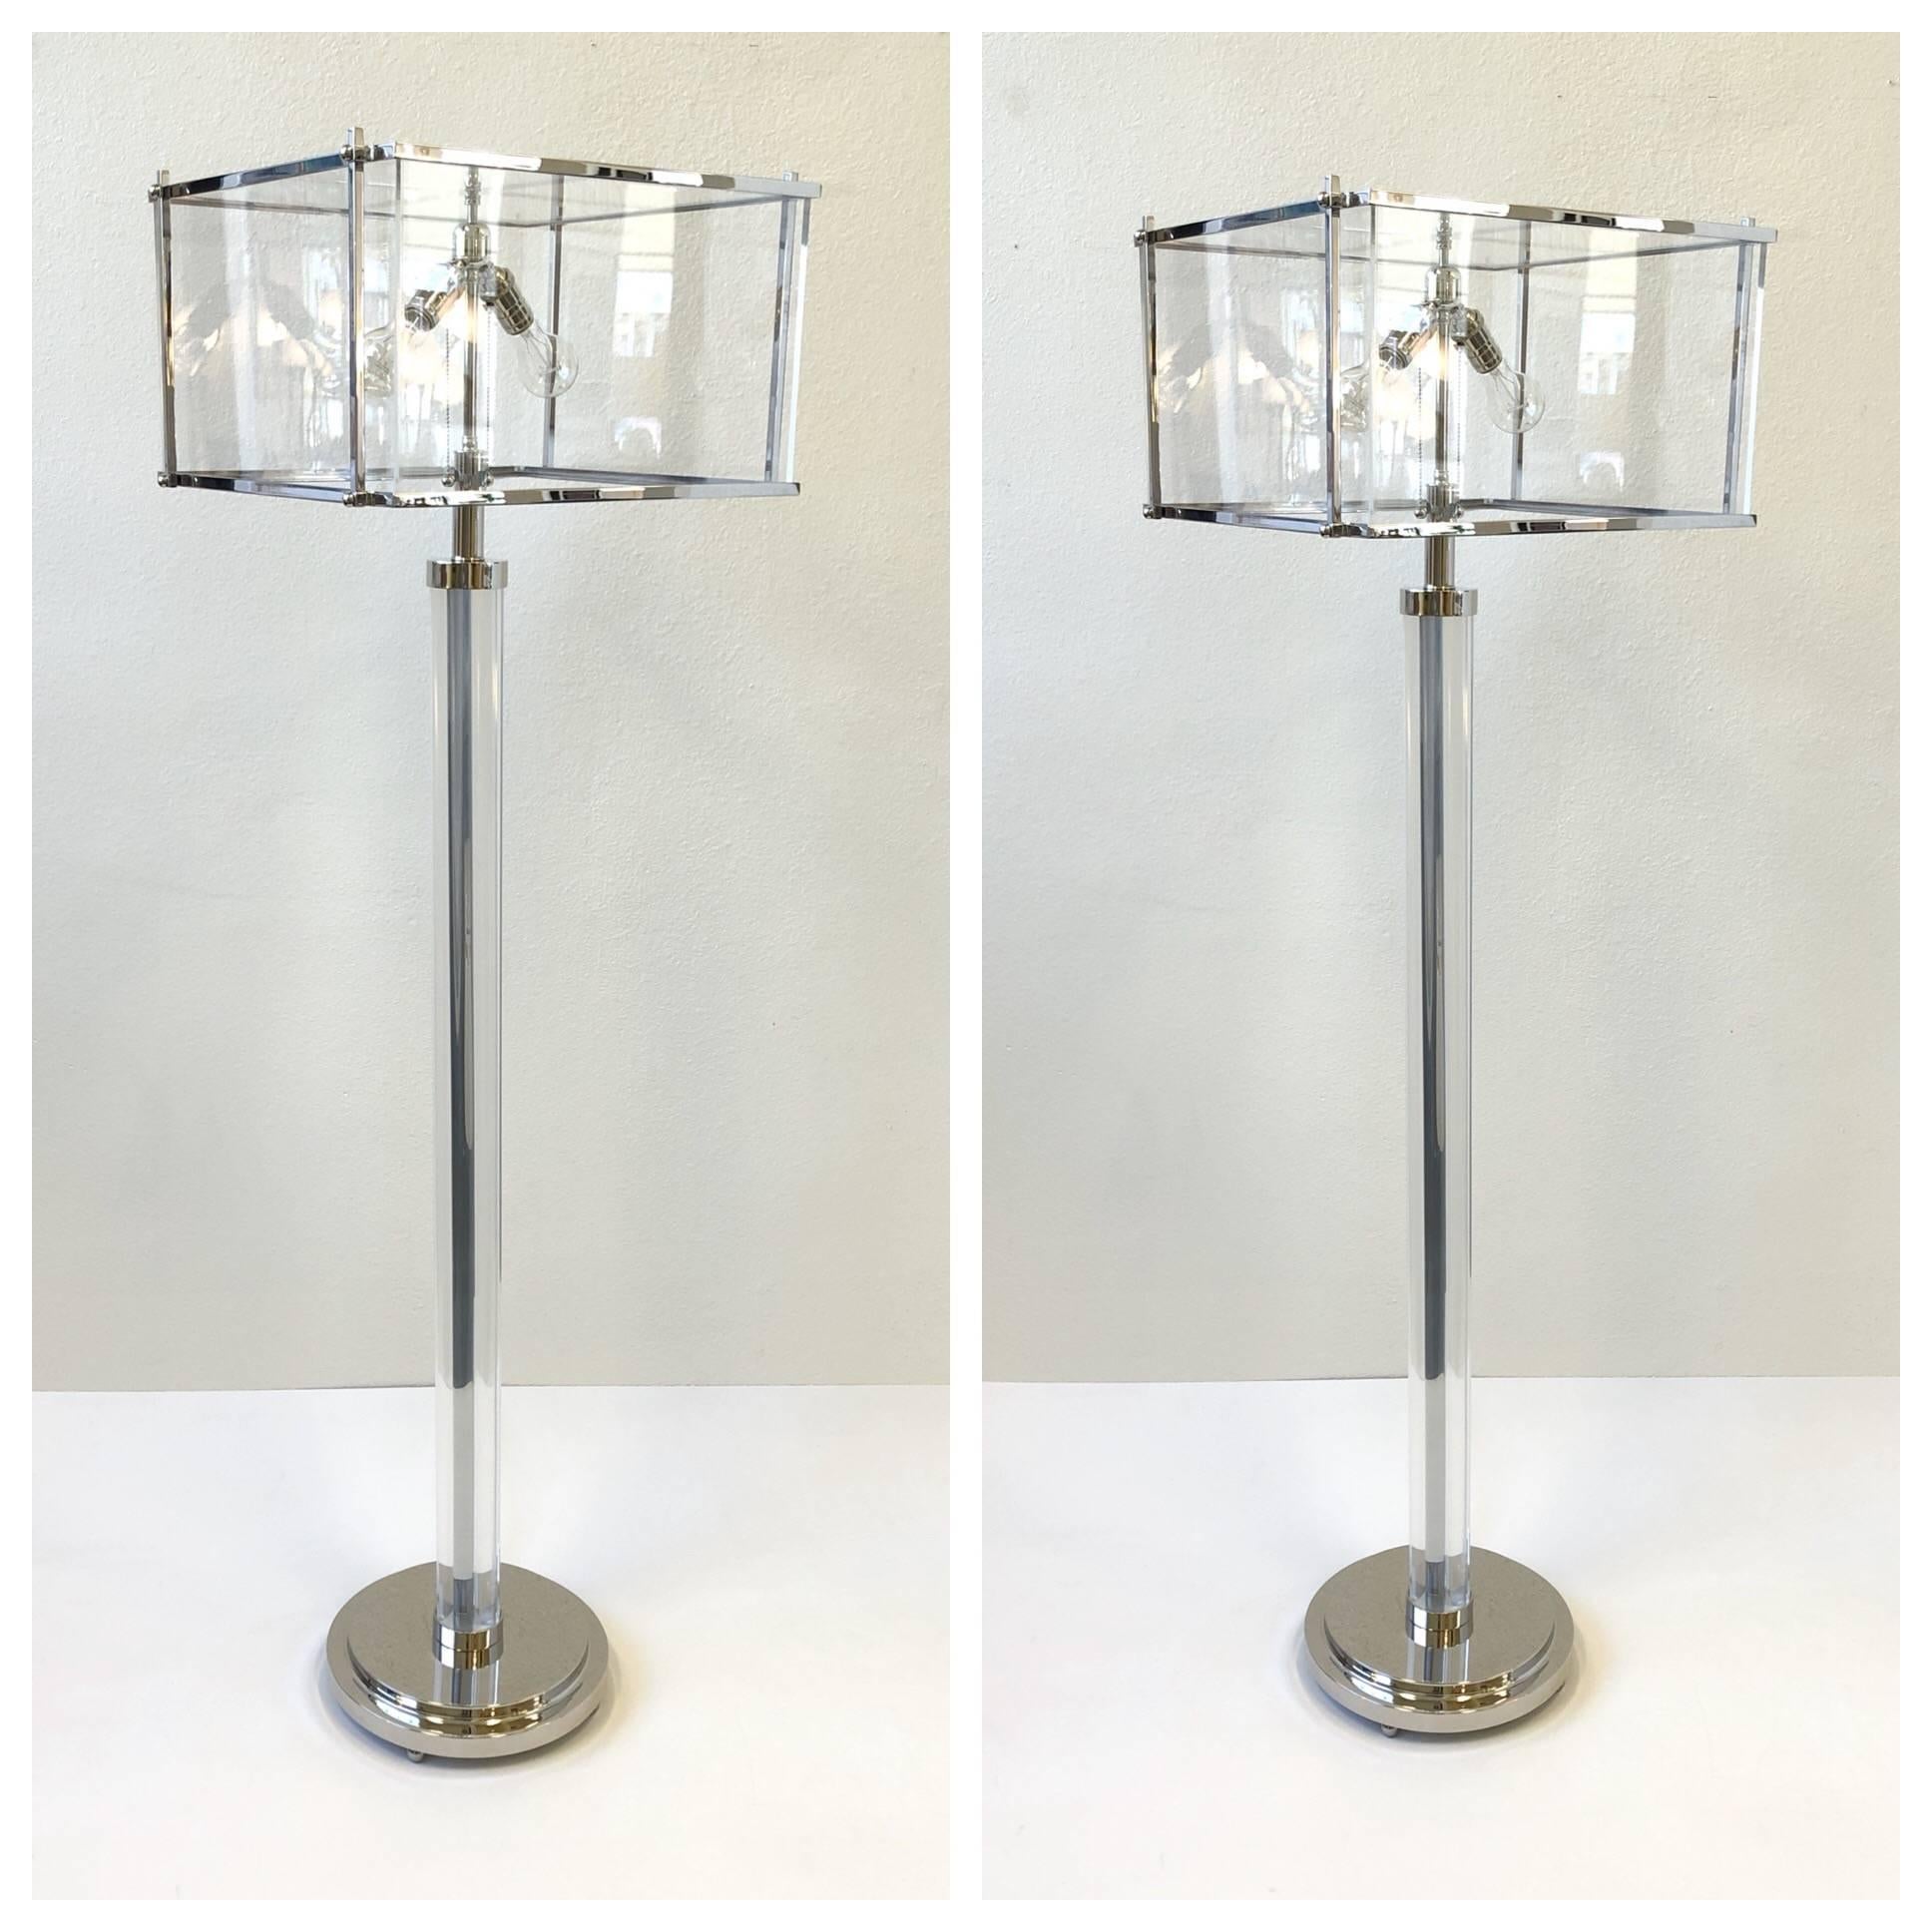 Ein spektakuläres Paar Stehlampen aus klarem Acryl und poliertem Nickel, entworfen vom bekannten Designer Charles Hollis Jones in den 1970er Jahren.
Neu restauriert.
Abmessungen: 65